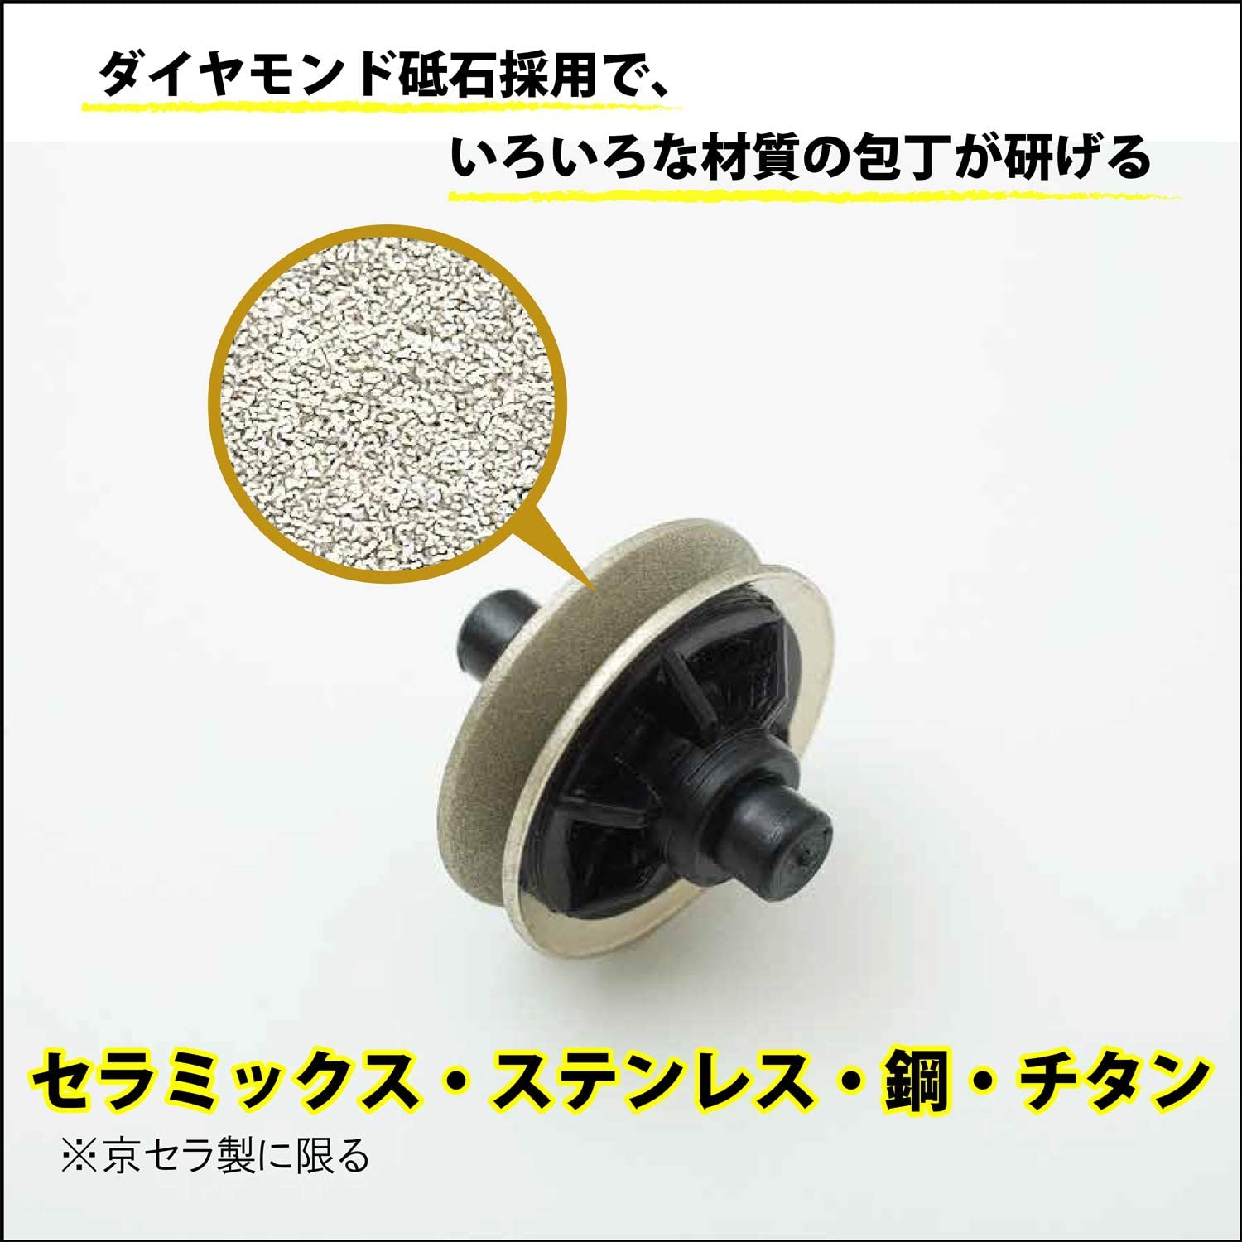 京セラ(KYOCERA) ダイヤモンドロールシャープナー DS20Sの商品画像サムネ3 